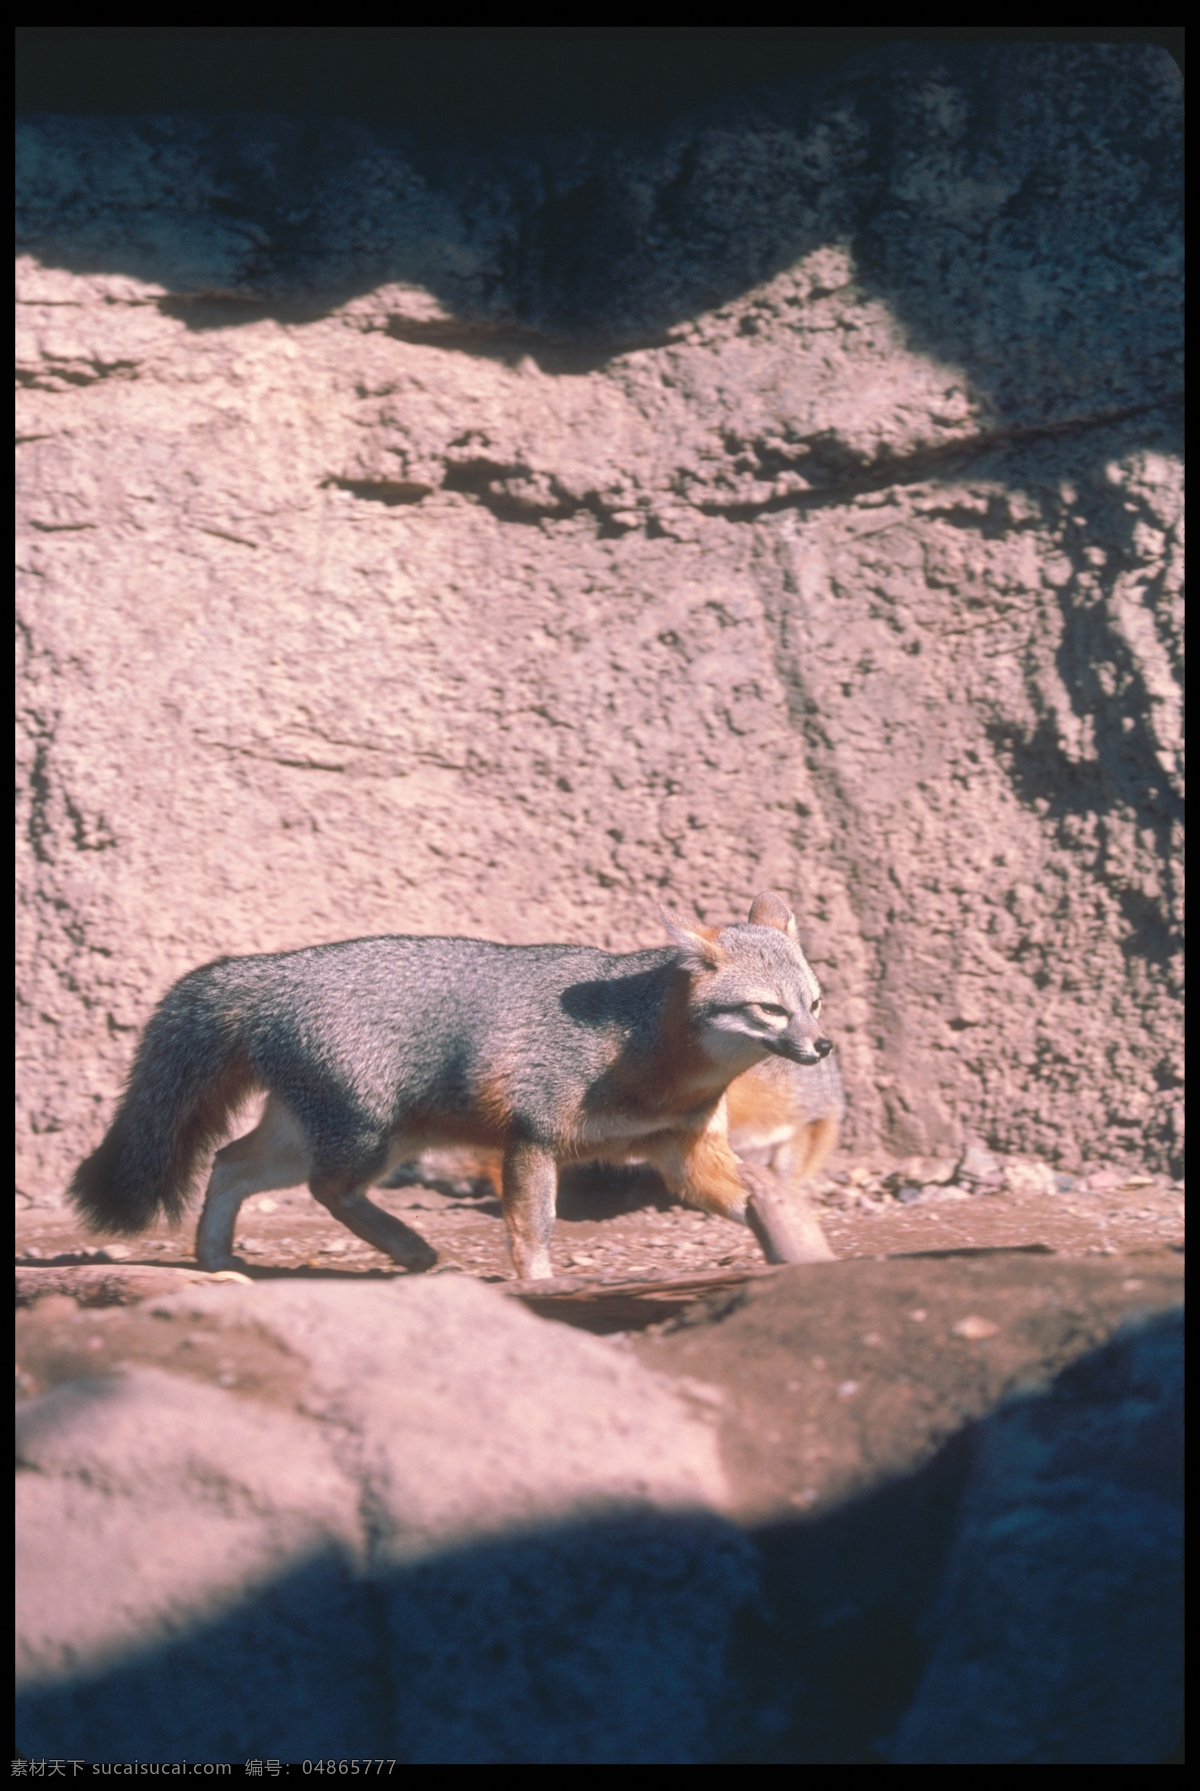 行走 狐狸 狐狸摄影 野生动物 动物摄影 动物世界 陆地动物 生物世界